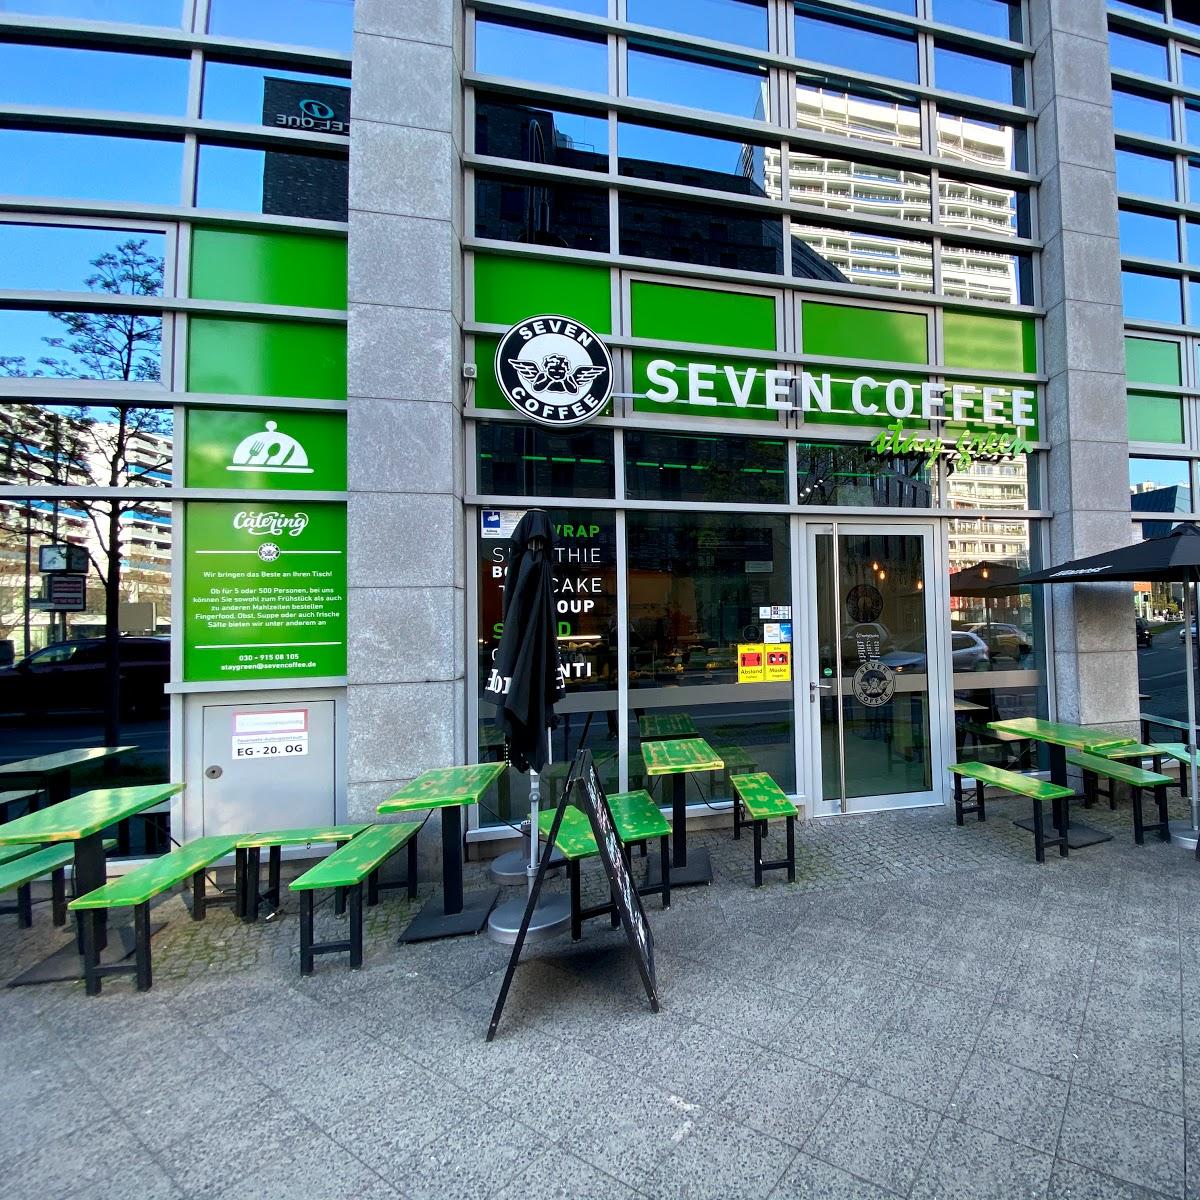 Restaurant "Seven Coffee Stay Green" in Berlin